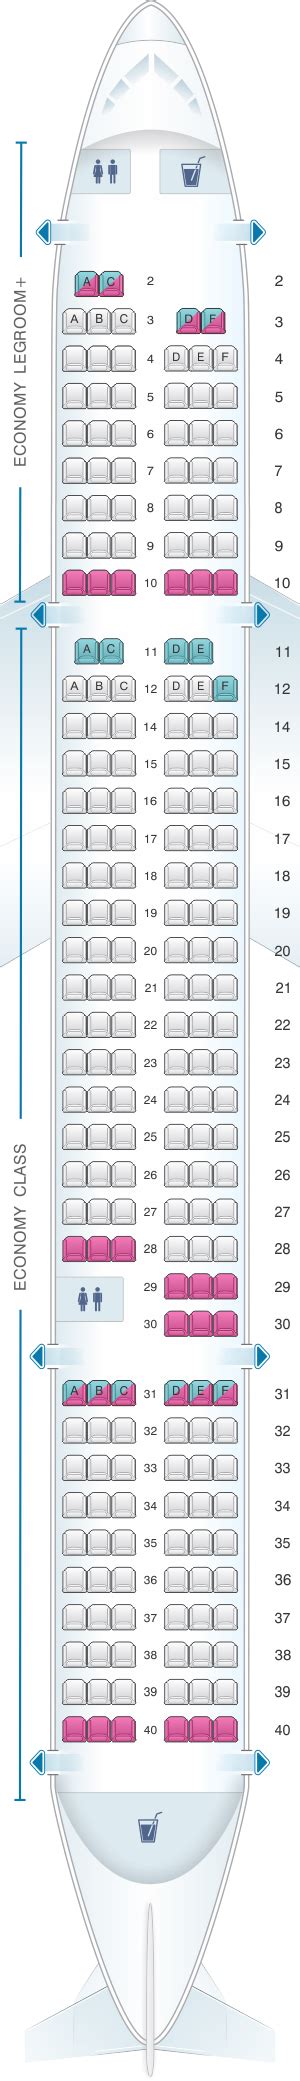 Seat Map Allegiant Air Boeing B757 200 Seatmaestro